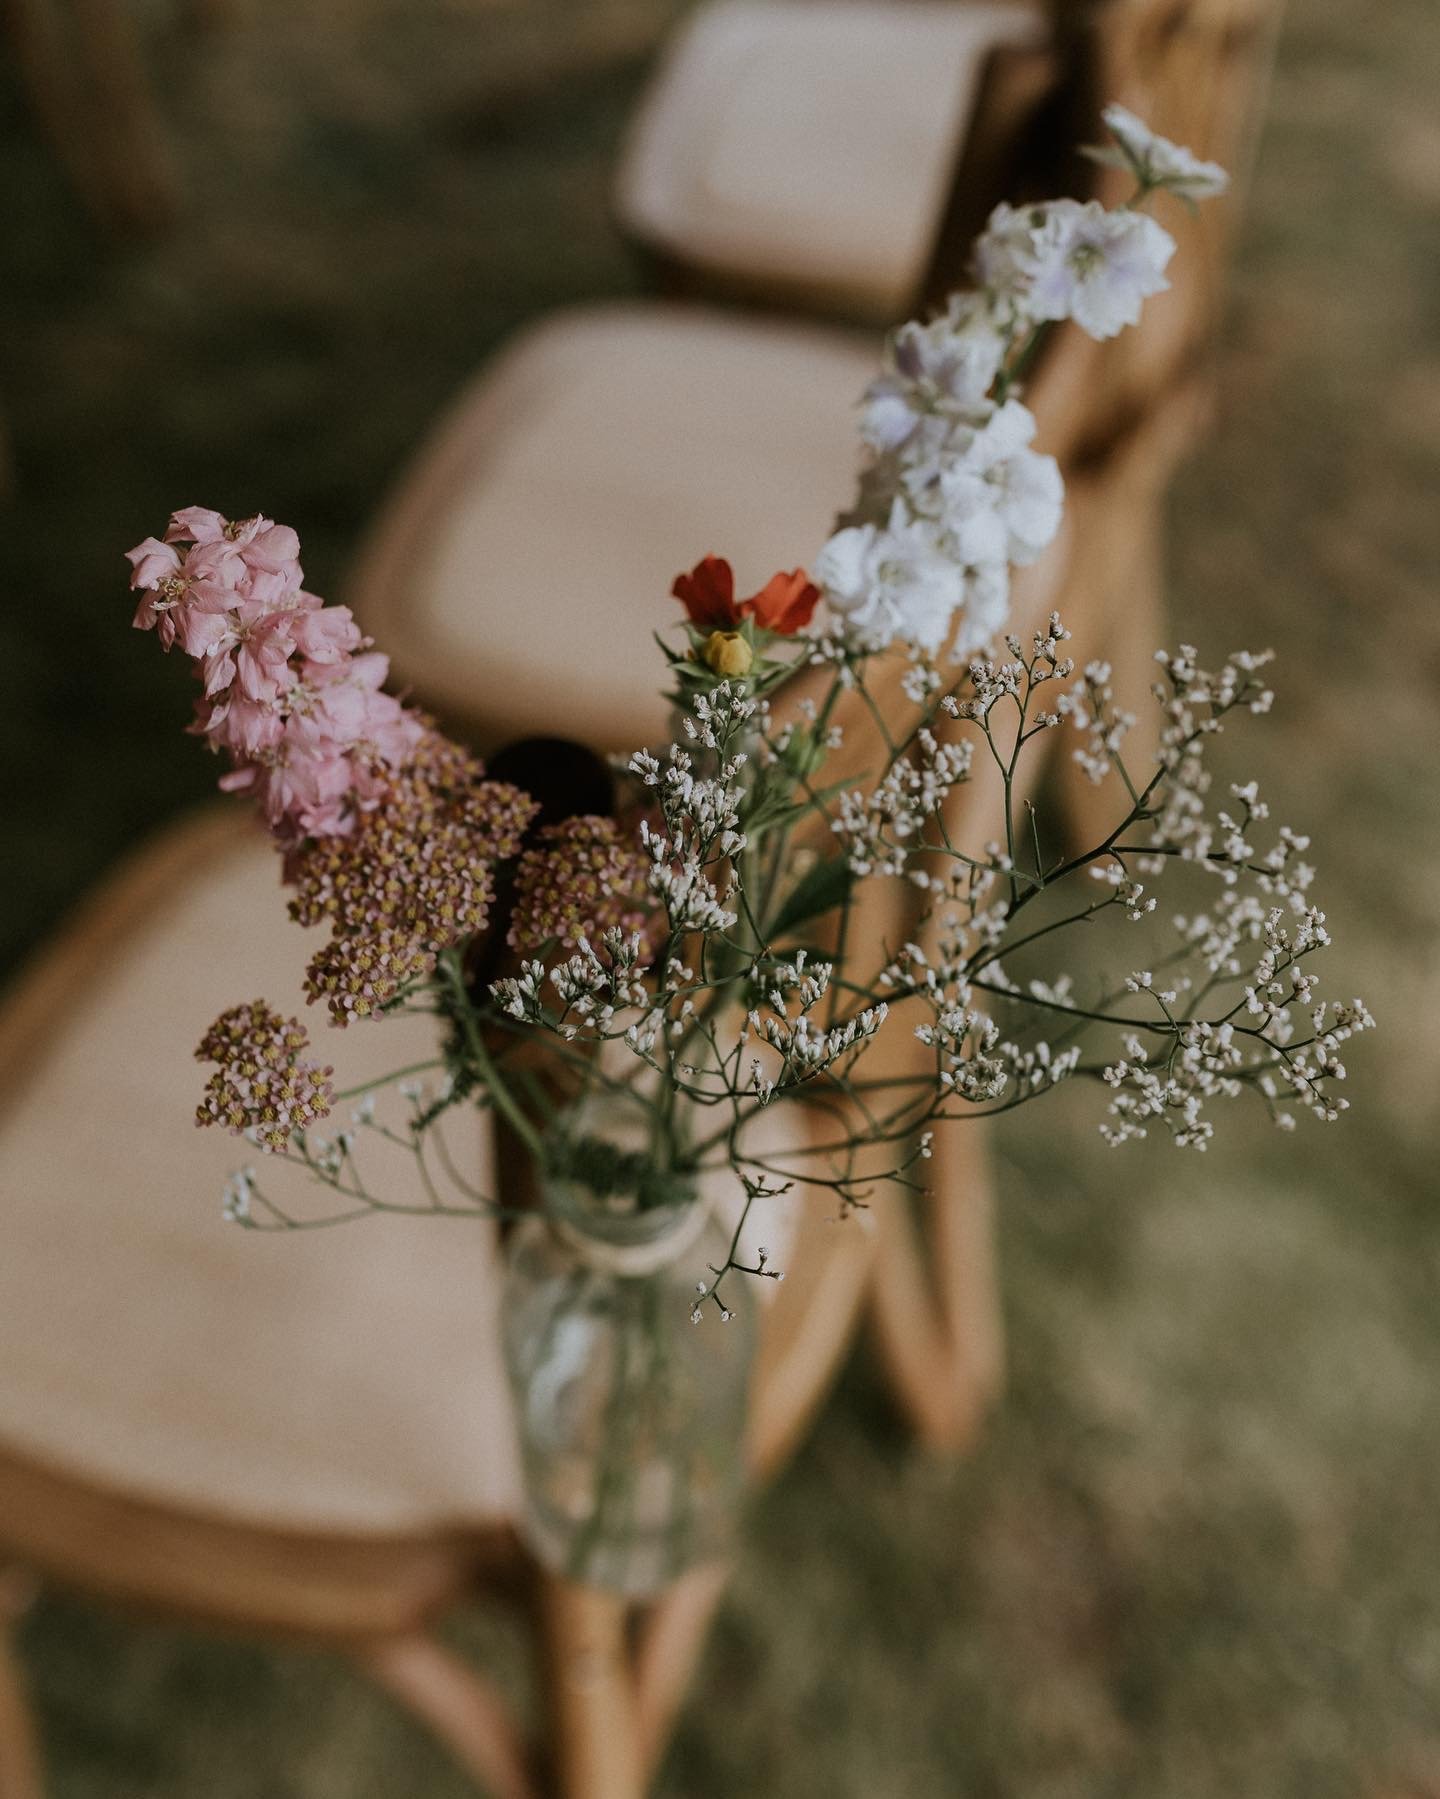 Ceremonies-with-Rachael-Thirsk-garden-wedding-garden-flowers.jpeg.jpeg